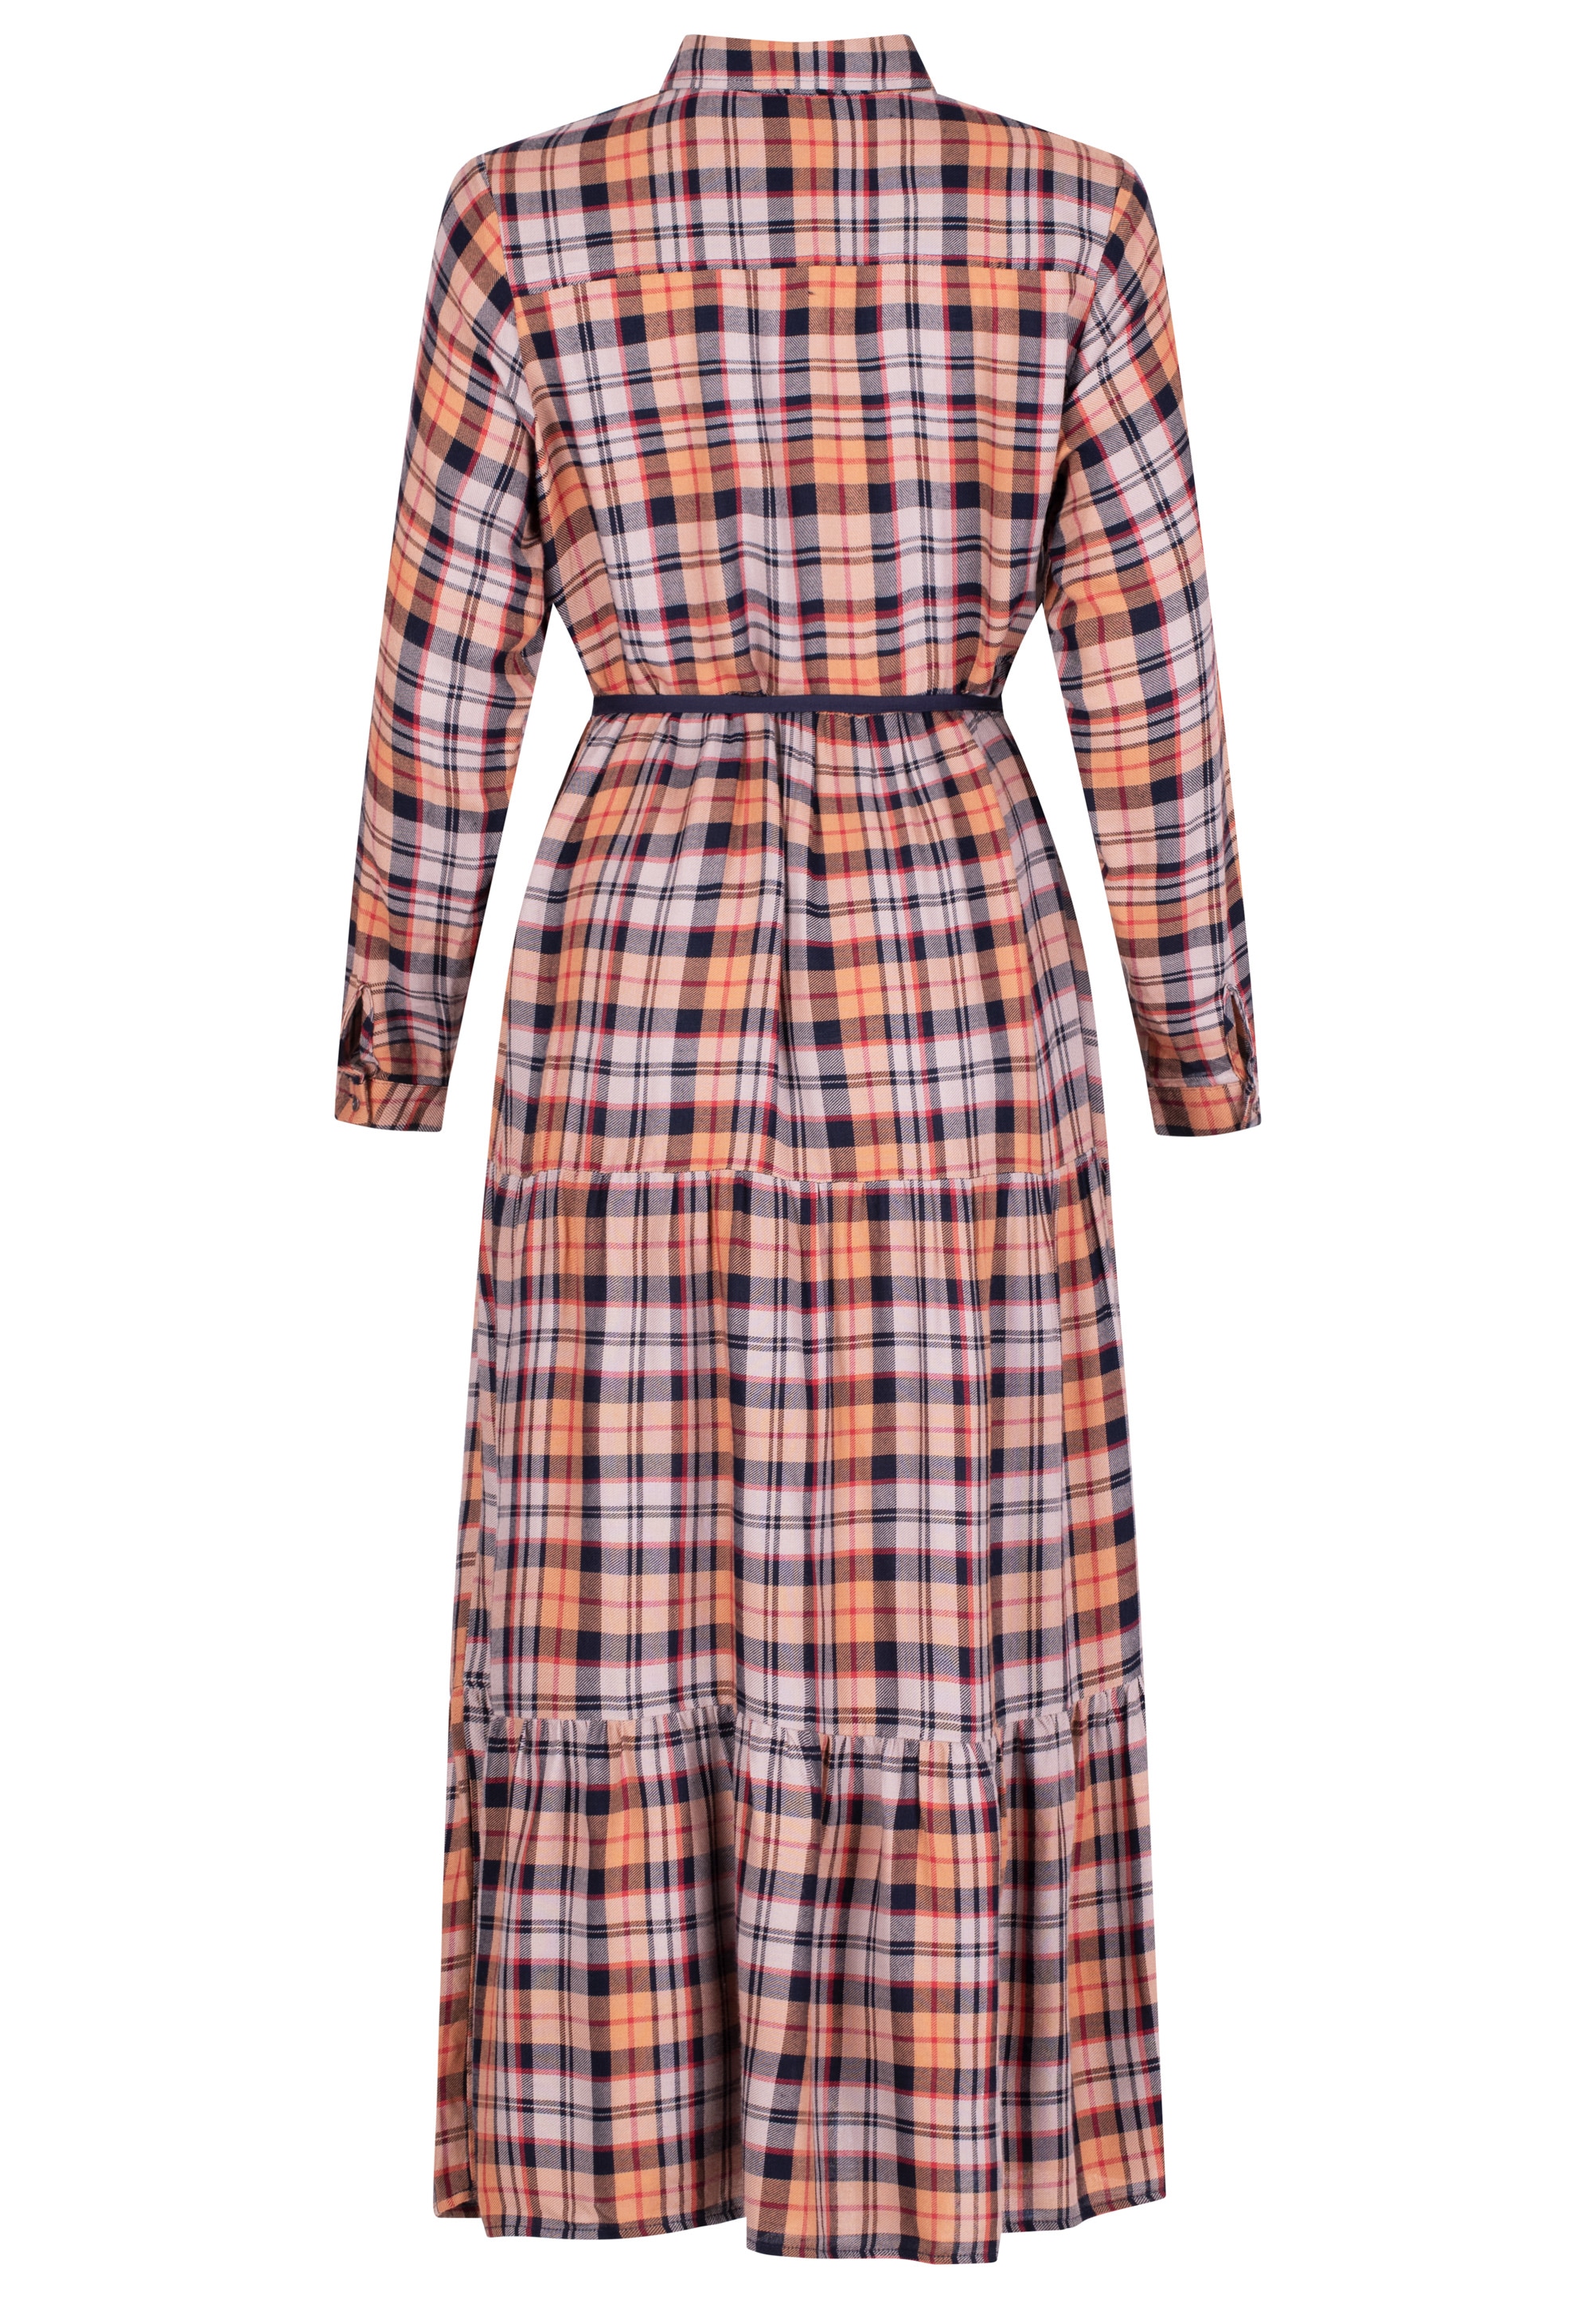 October Jerseykleid, mit kaufen tollem Karo-Muster | BAUR